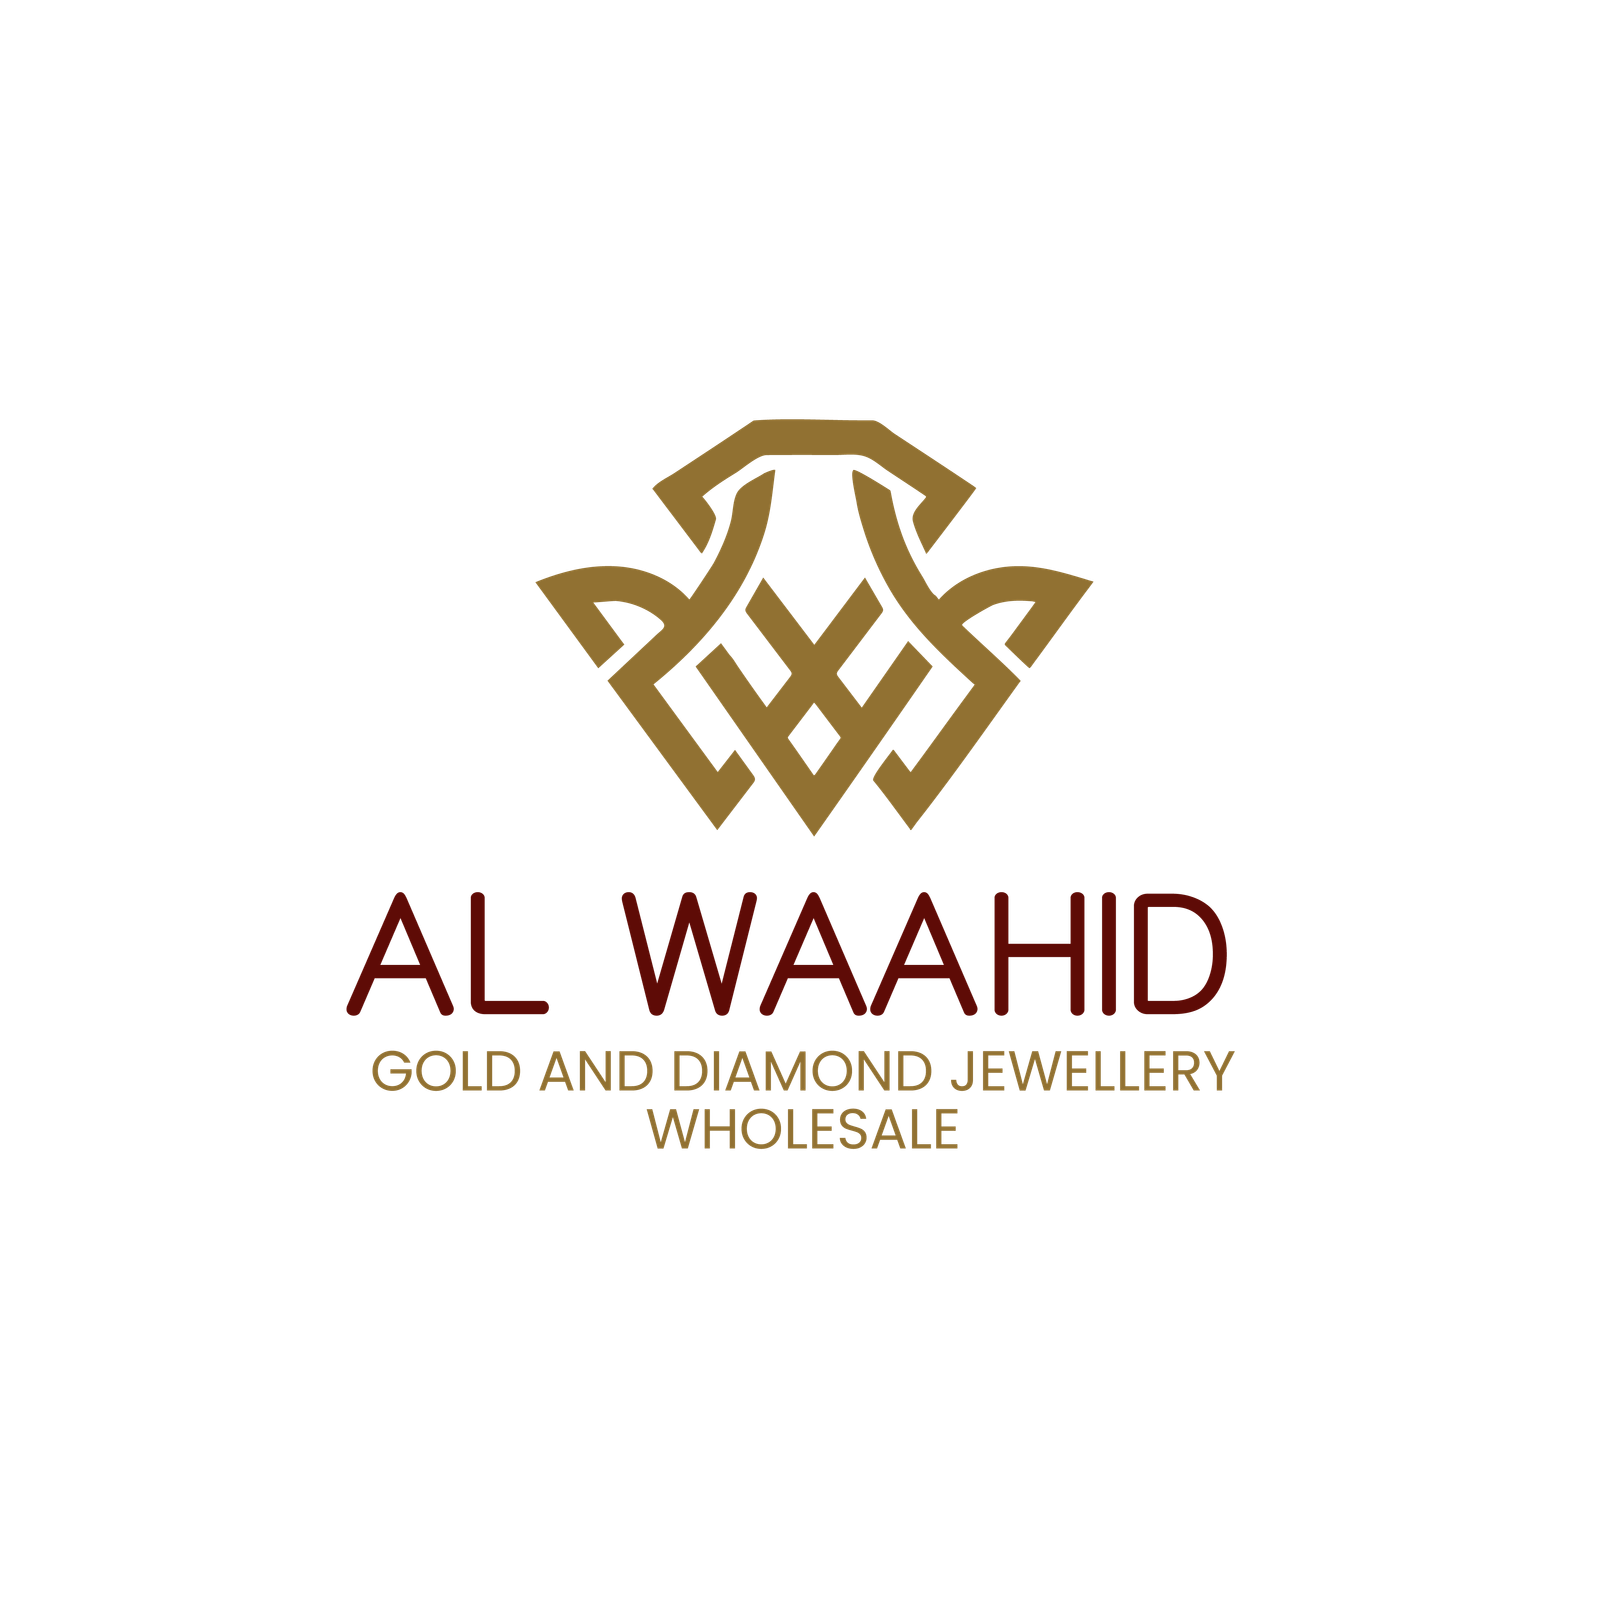 Al Waahid Gold & Diamond Jewellery Wholesale